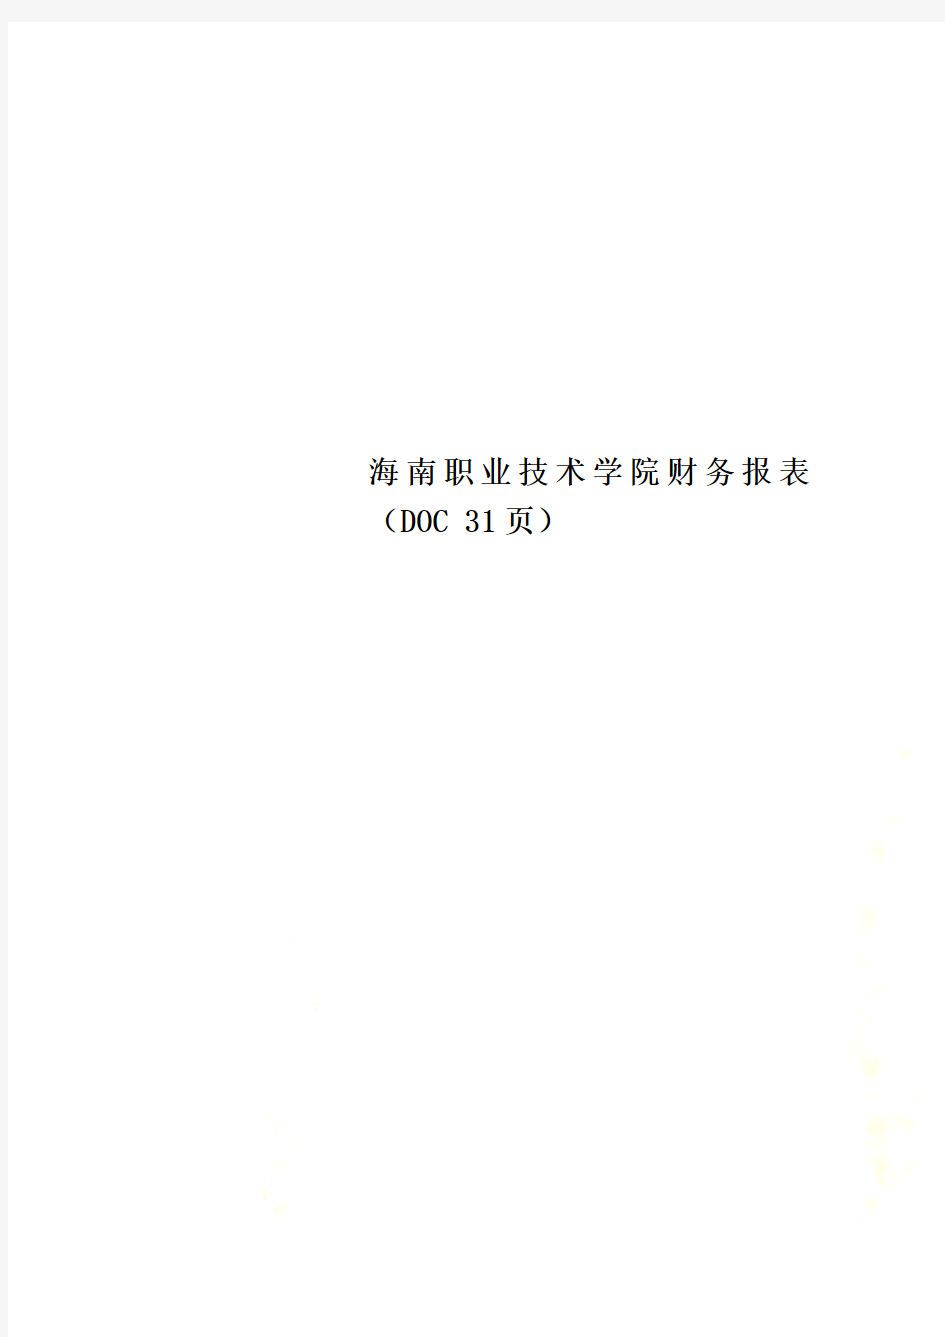 海南职业技术学院财务报表(DOC 31页)